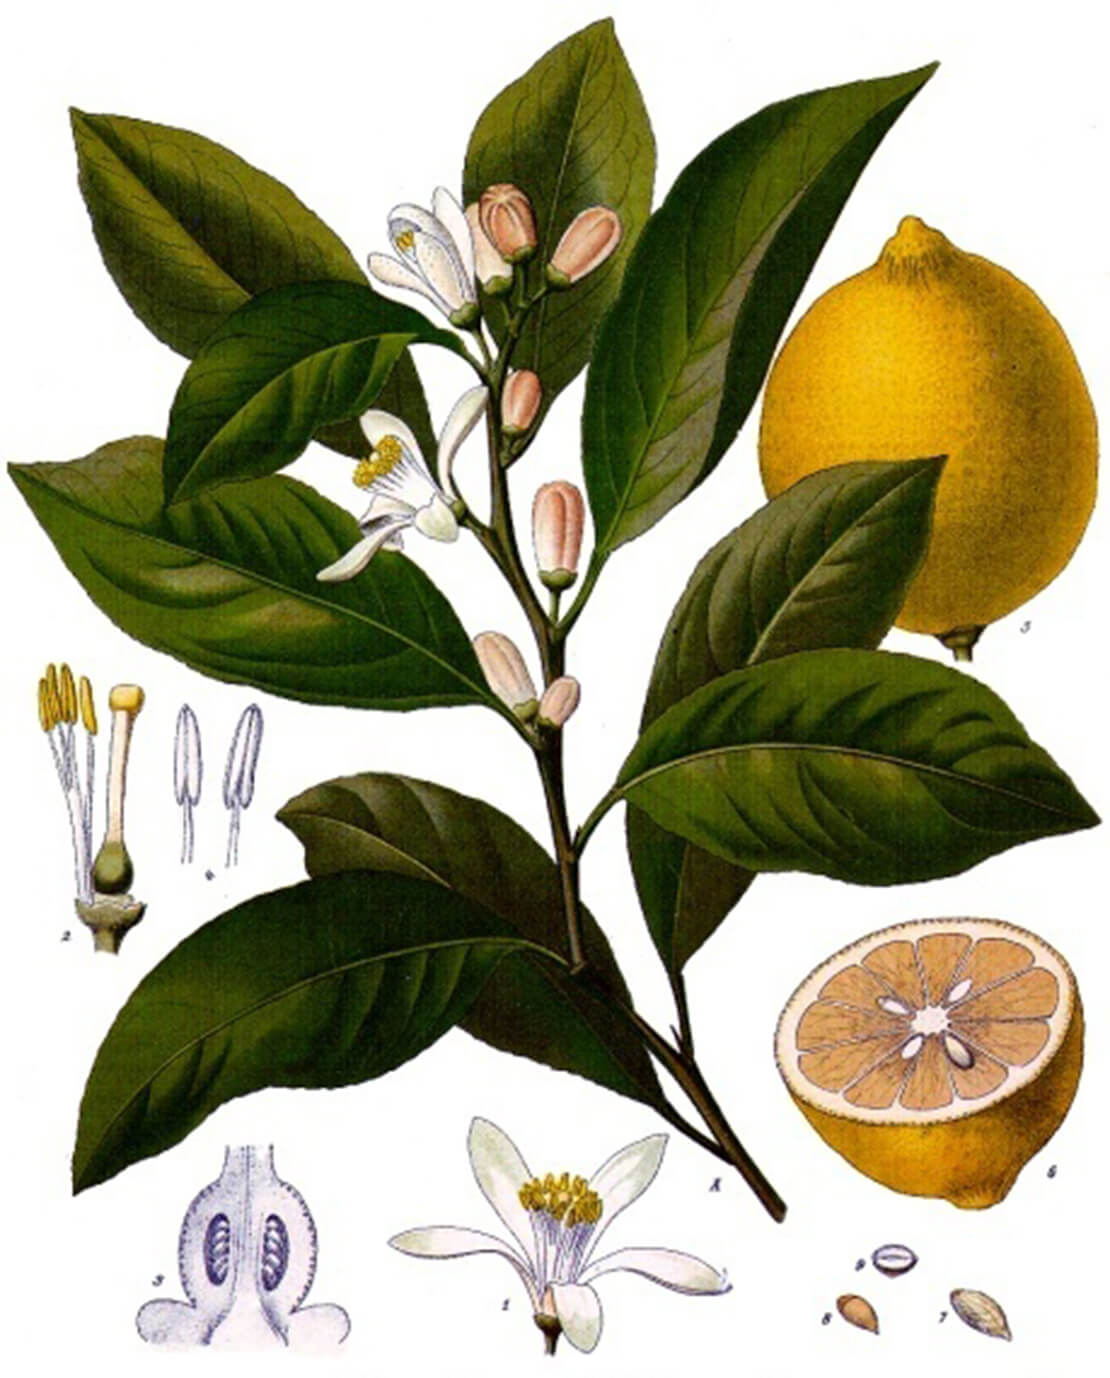 Zitrone, Abbildung aus: Franz Eugen Köhler, Köhler's Medizinal-Pflanzen, 1897, Wikimedia Commons 